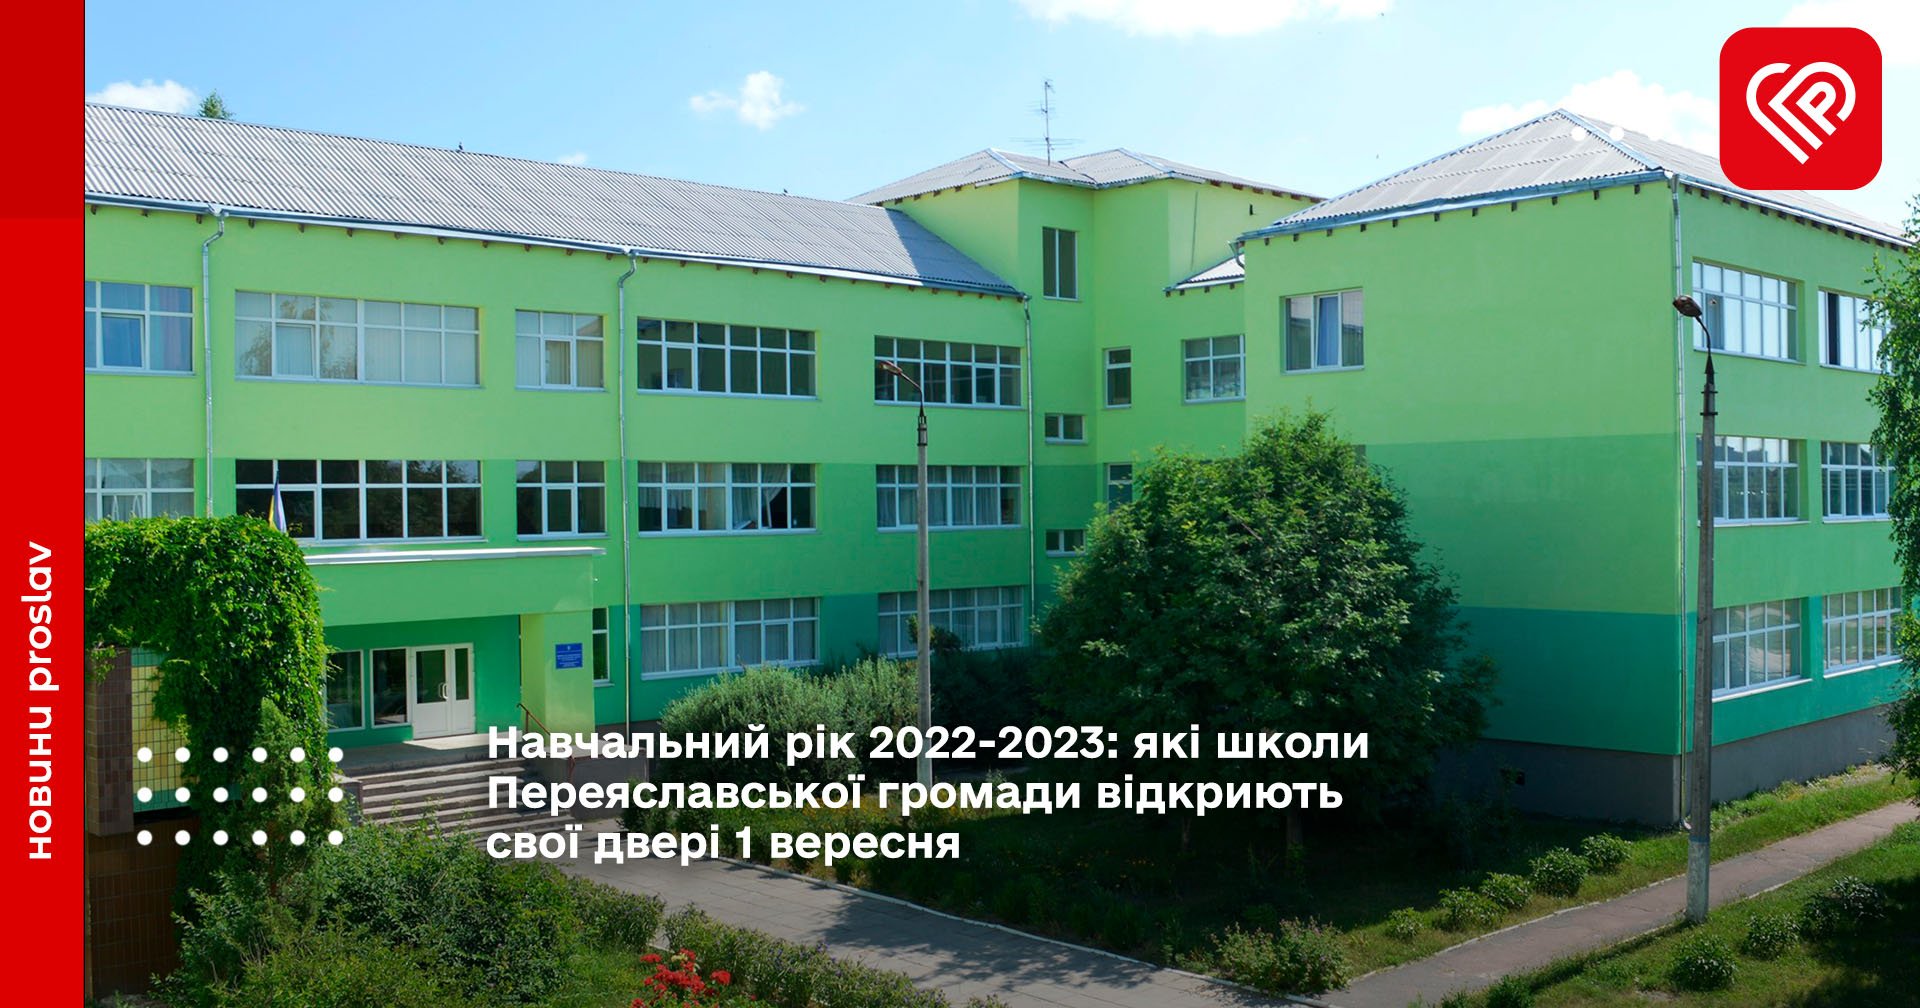 Навчальний рік 2022-2023: які школи Переяславської громади відкриють свої двері 1 вересня